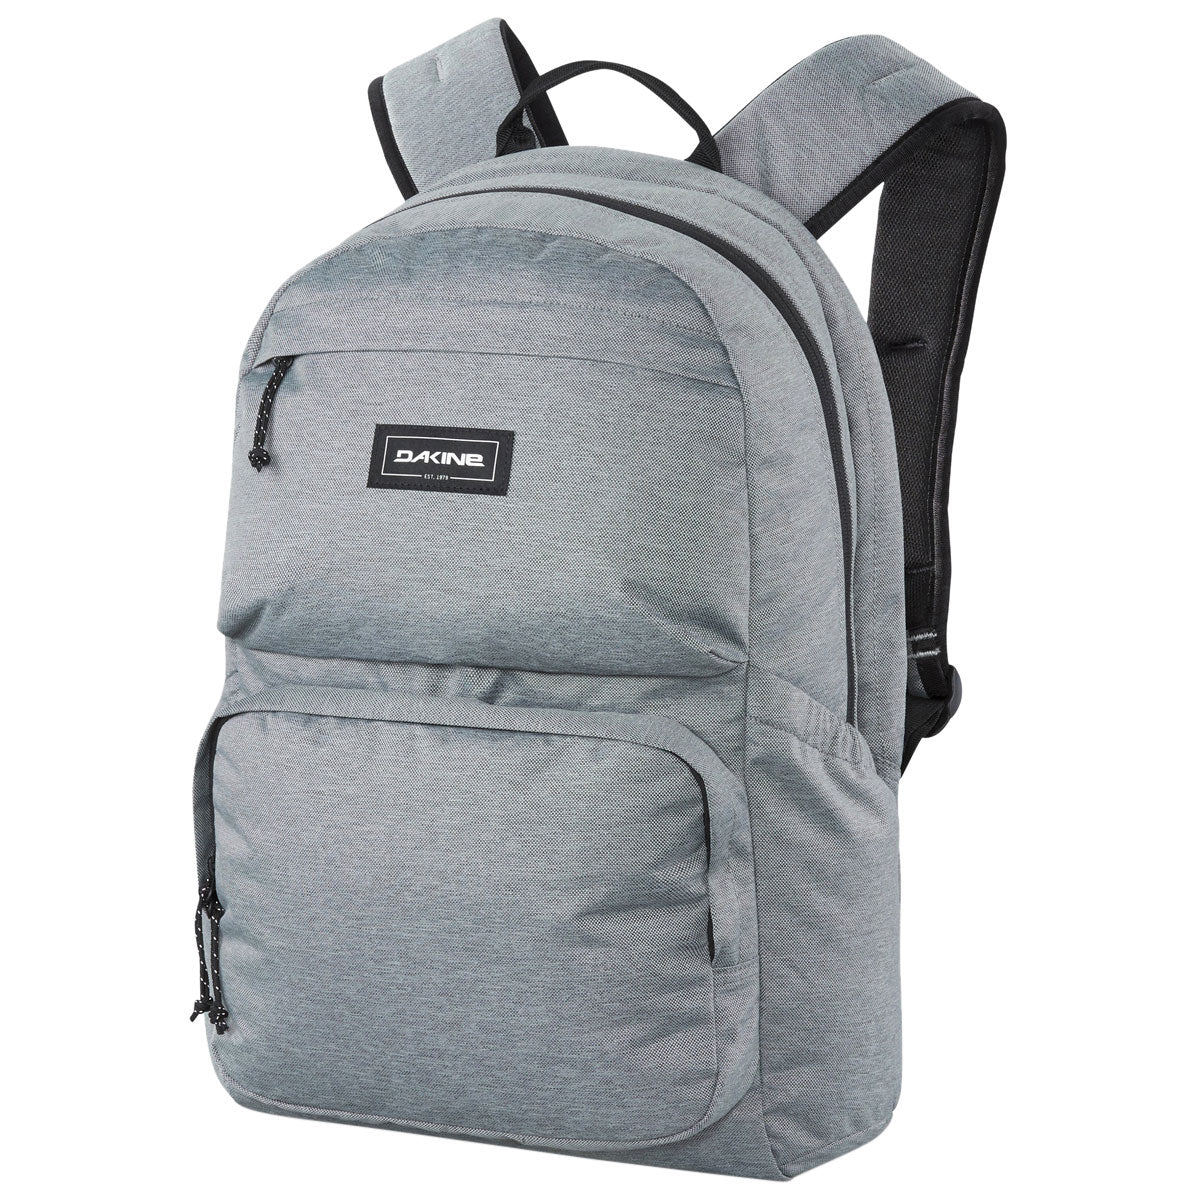 Dakine Method 25L Backpack - Geyser Grey image 1